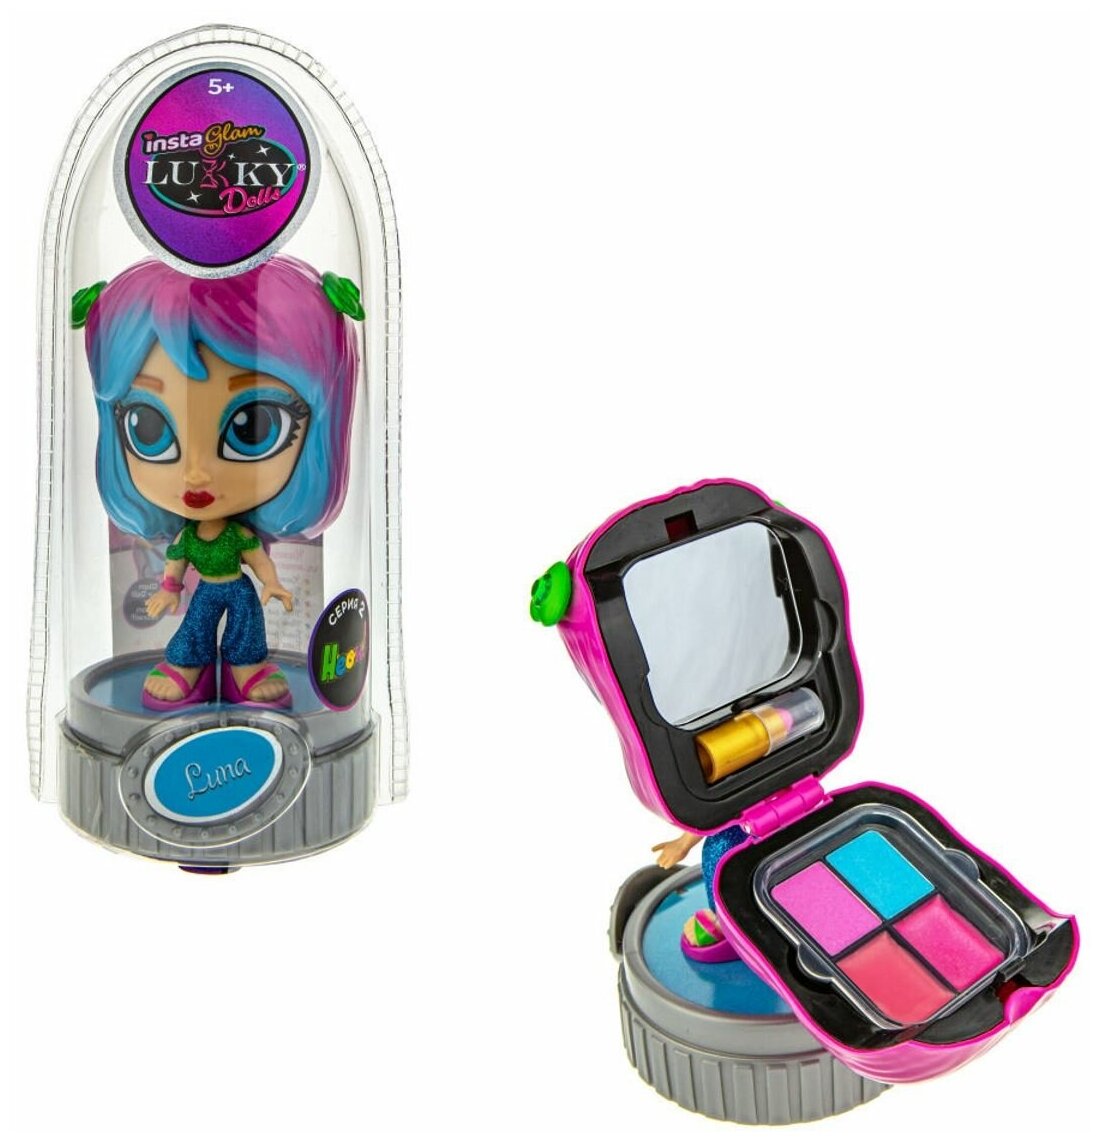 Луна, Lukky (игровой набор с куклой, неон, 12 см, с 2 аппликаторами и косметикой внутри, Т21422, серия Instaglam Doll)